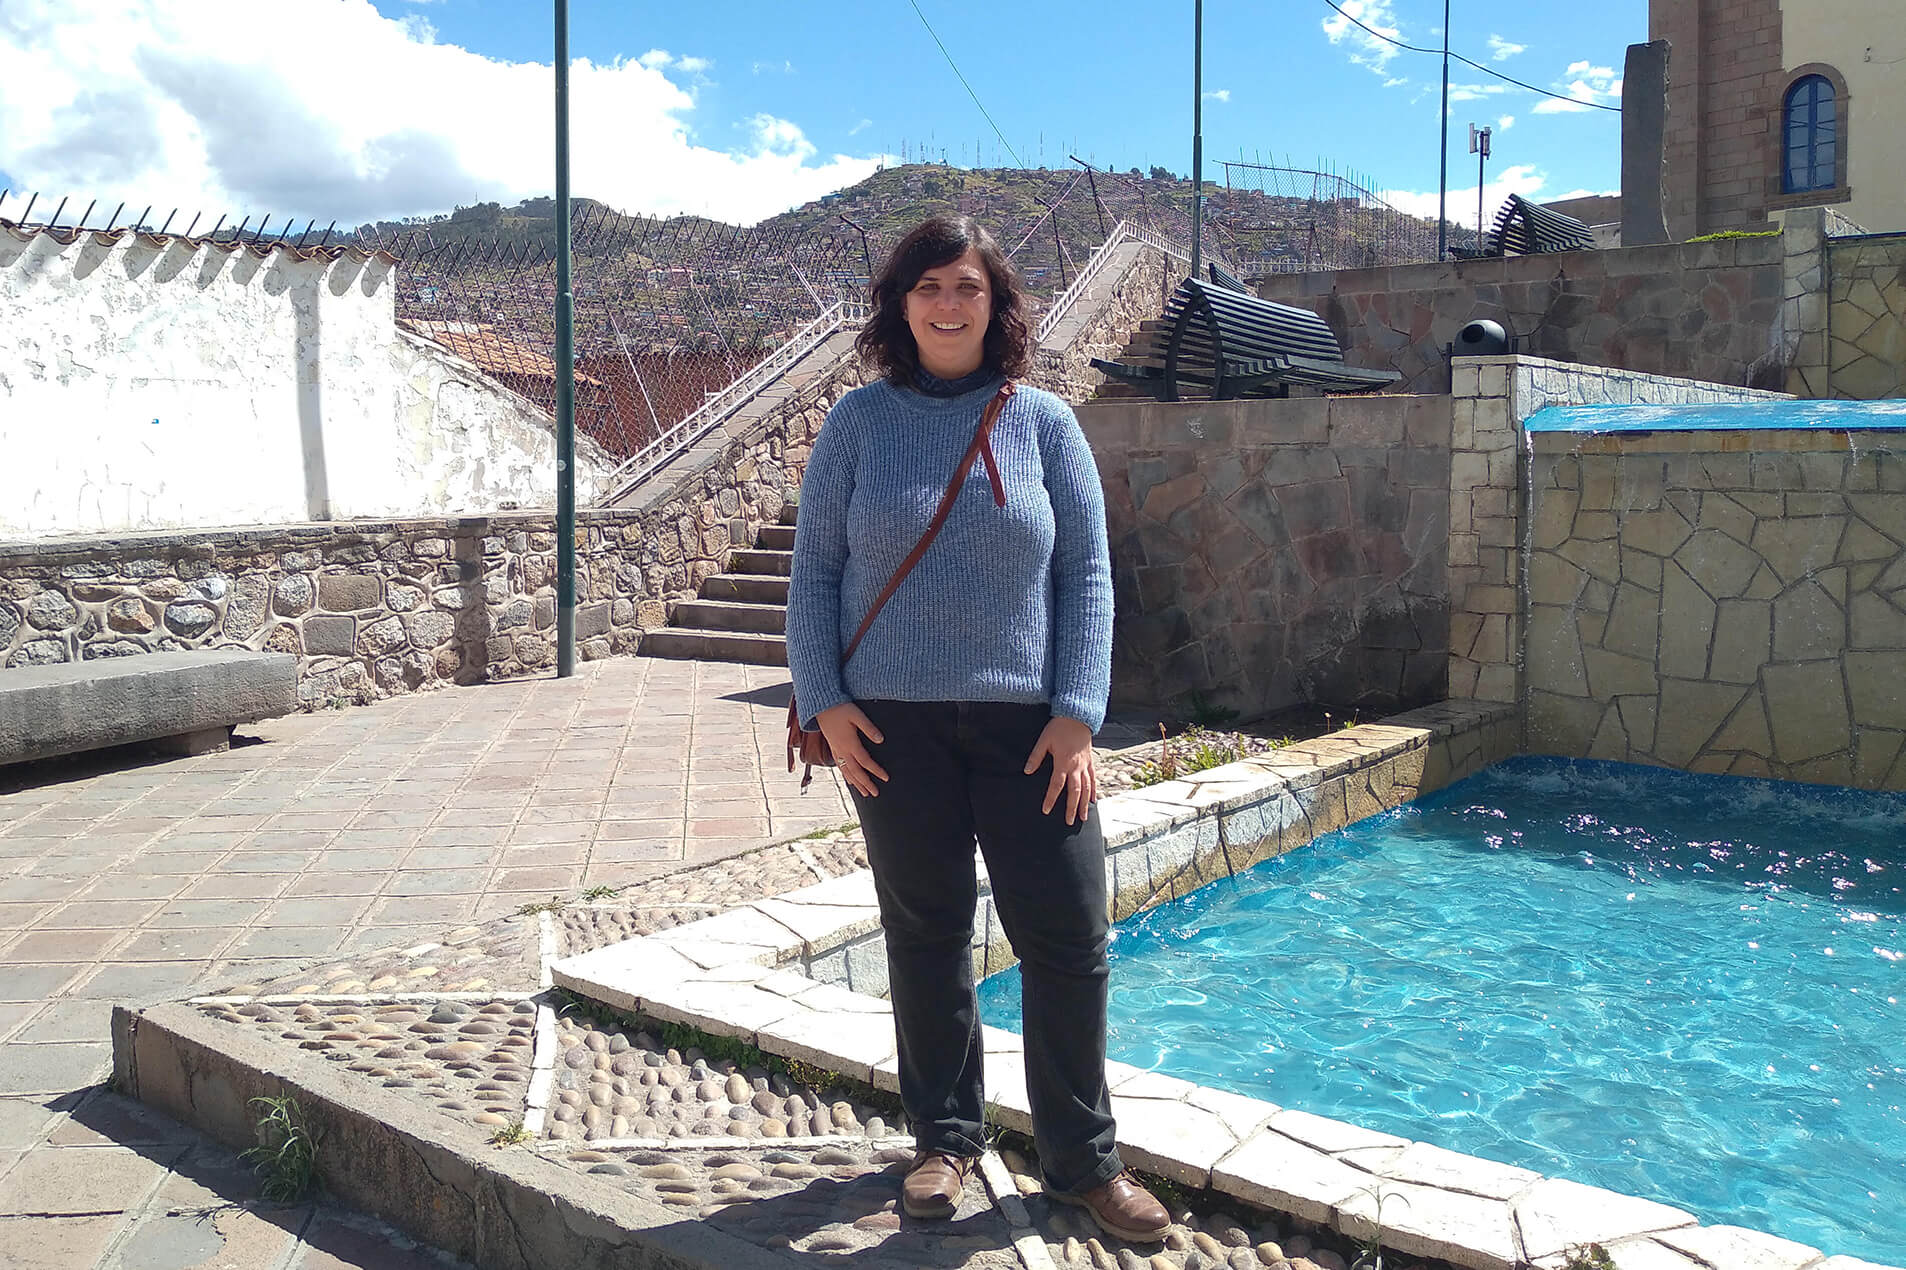 Indie at Plazoleta Tricentenario, Cusco city